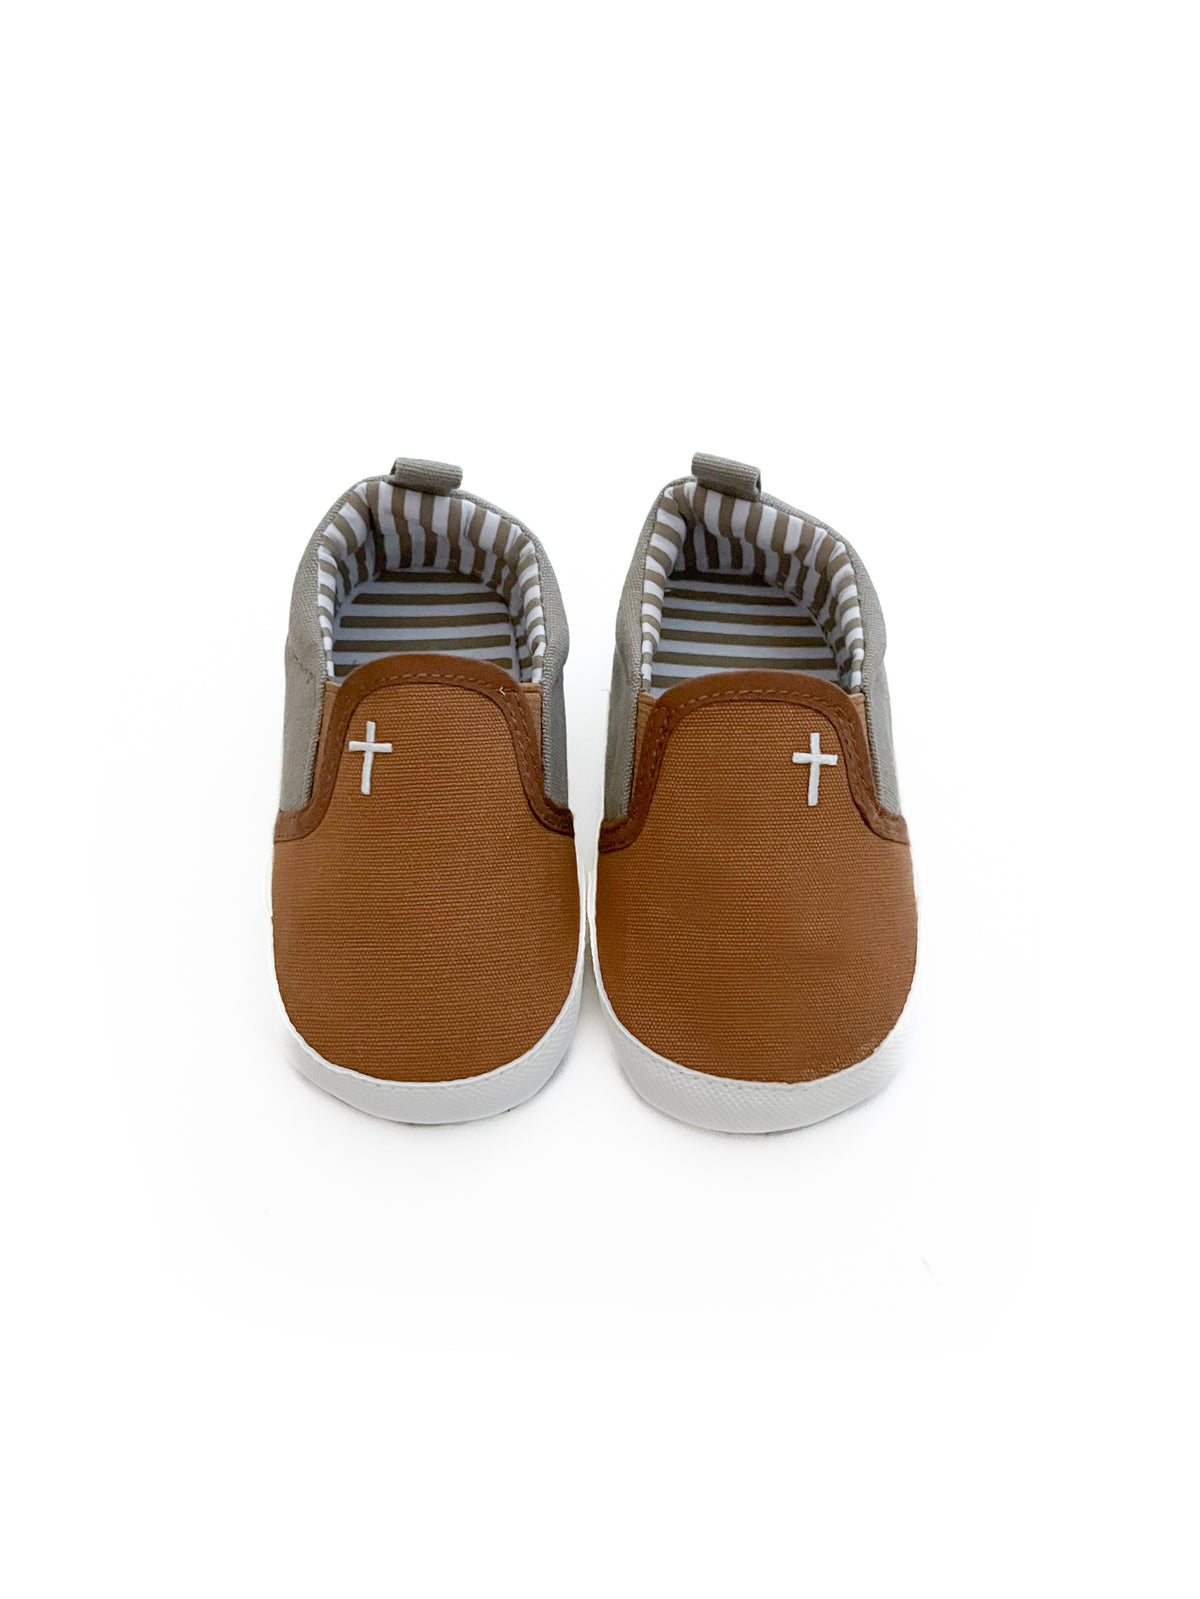 Tan Cross Baby Shoe